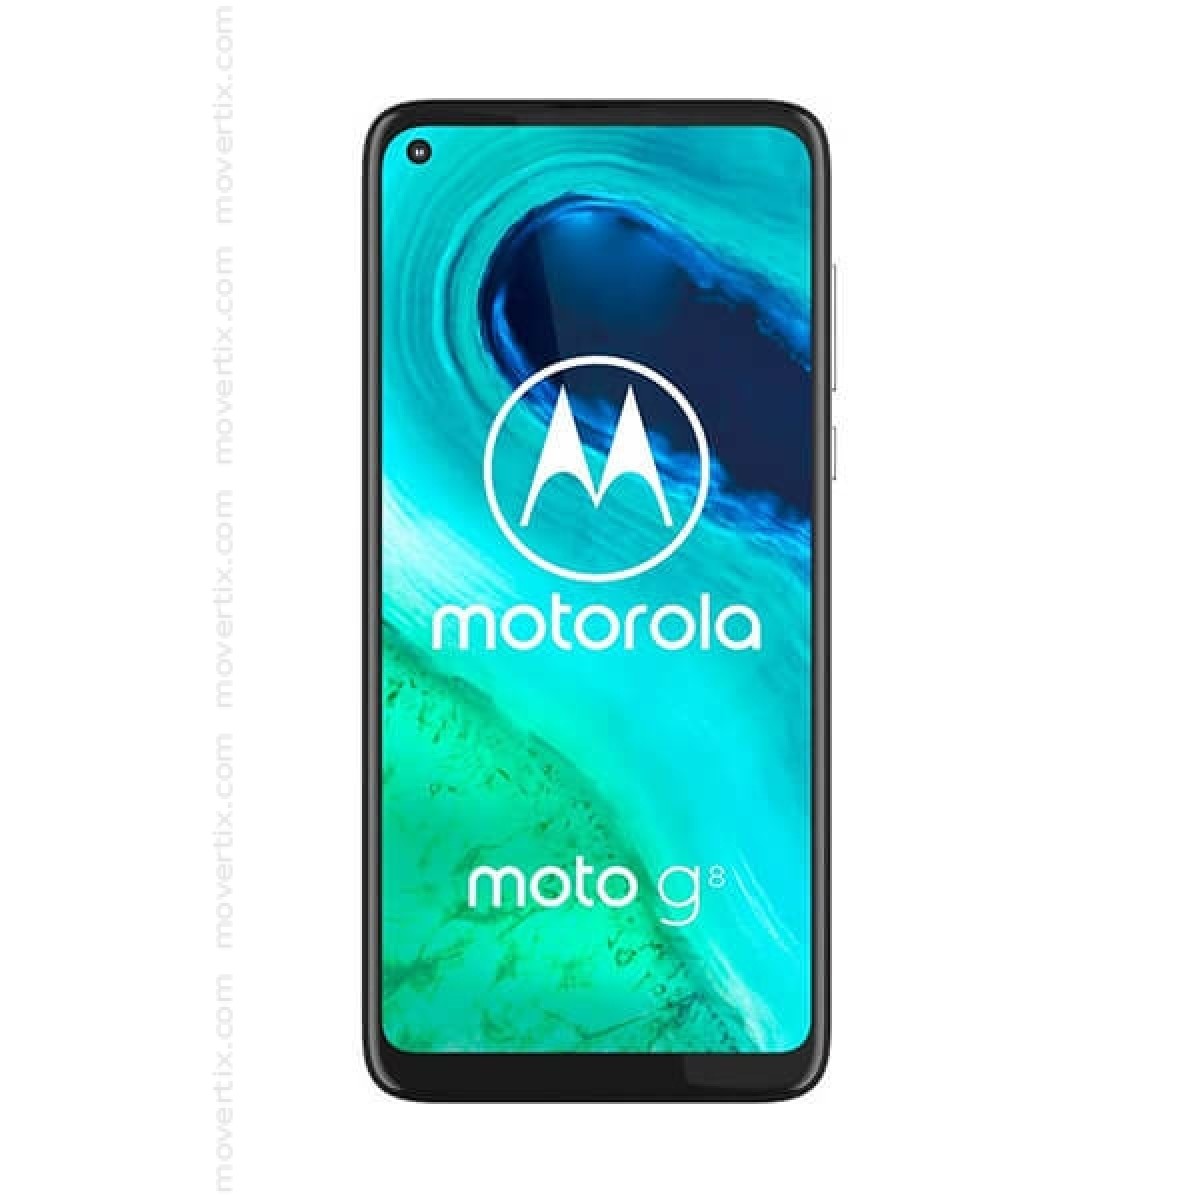 Motorola Moto G8 Dual SIM Branco de 64GB e 4GB RAM - XT2045-2